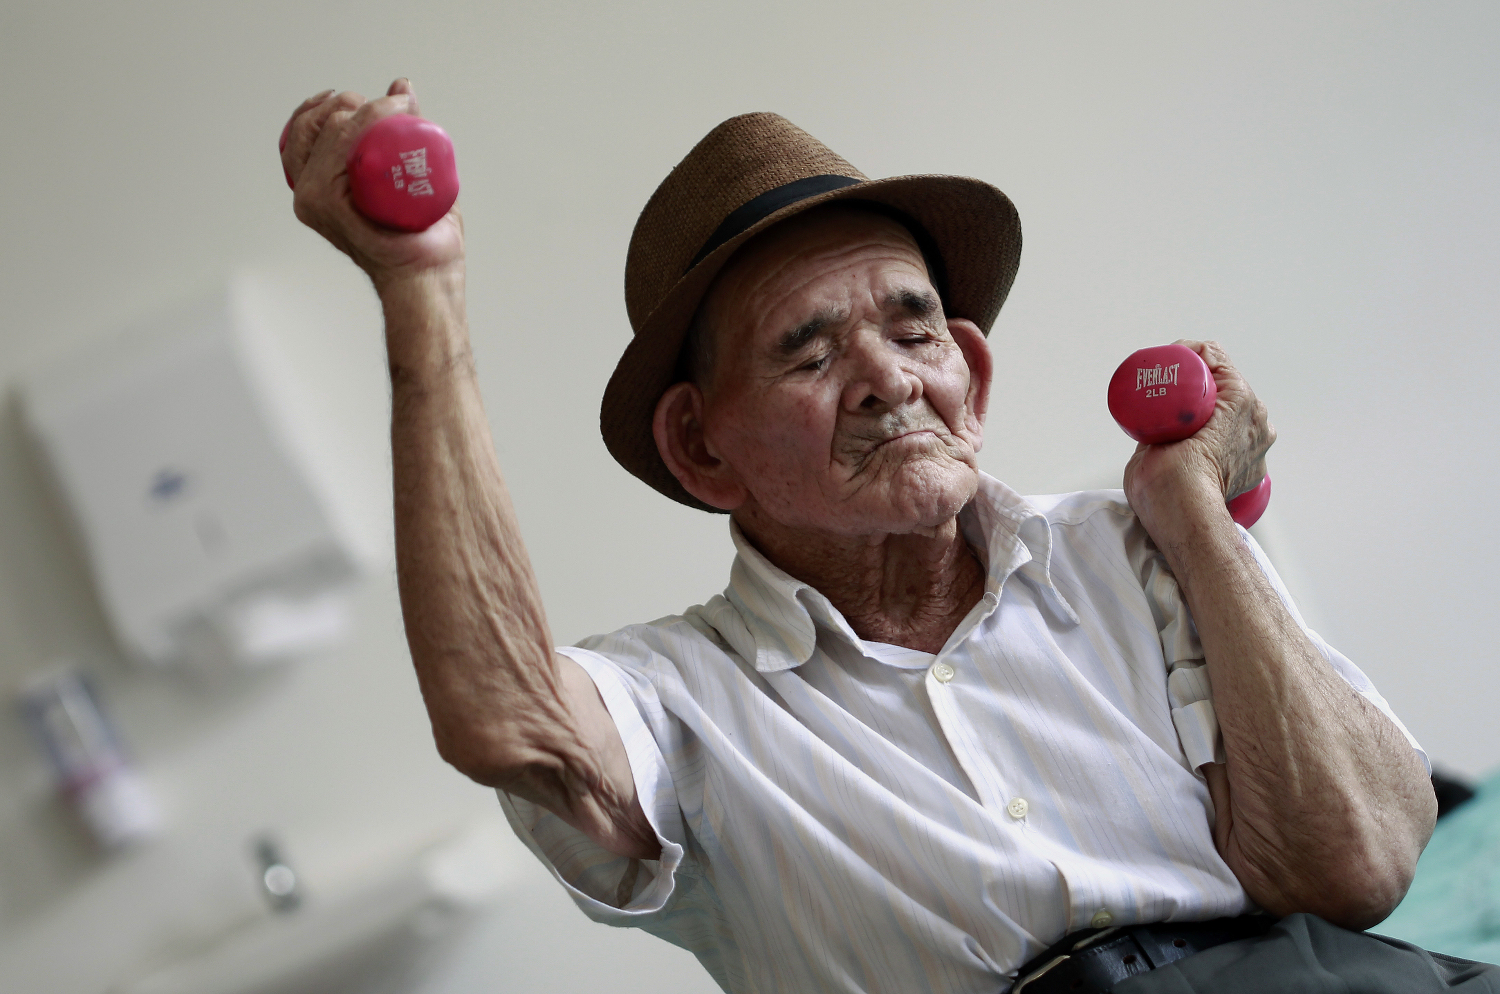 Científicos españoles descubren la clave del envejecimiento